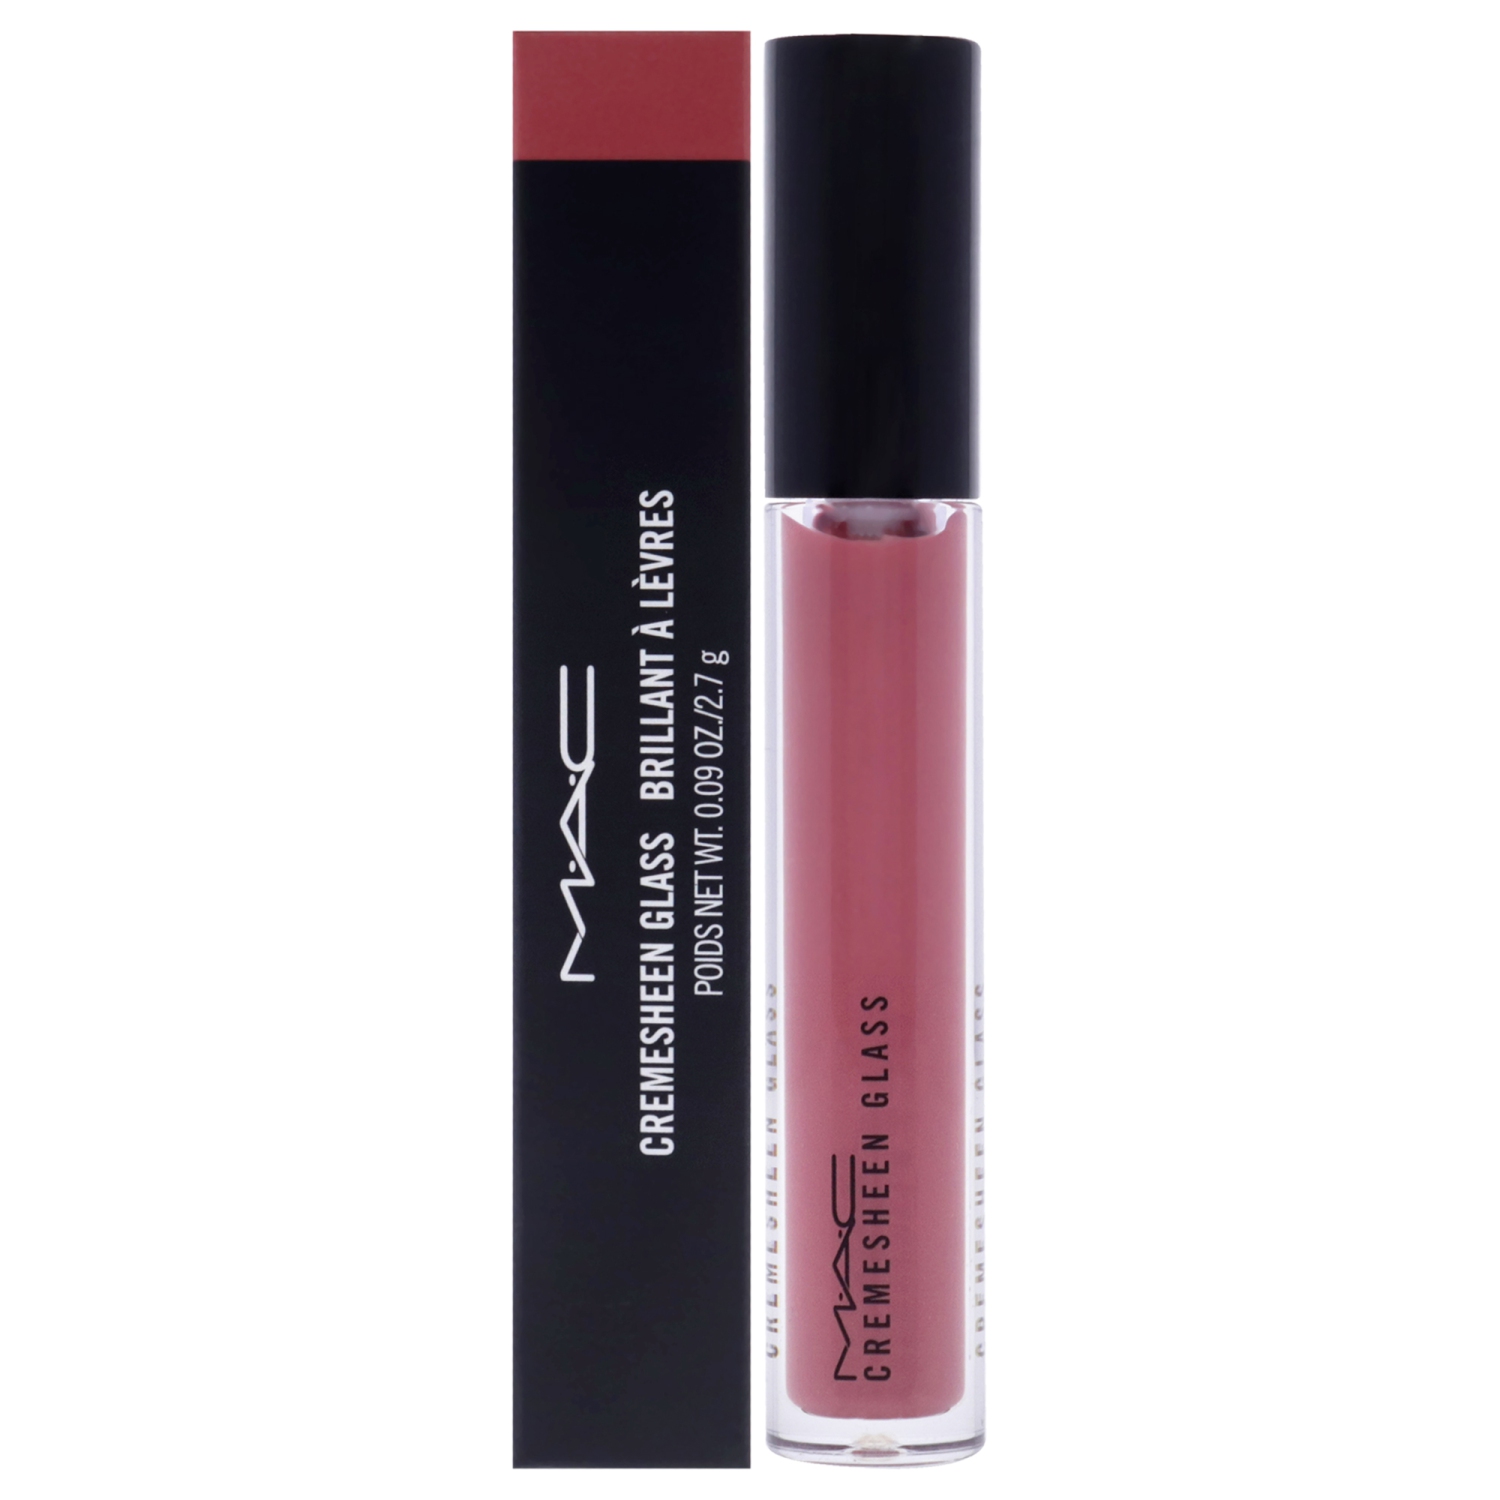 Cremesheen Glass Lipstick - Deelight by MAC for Women - 0.1 oz Lipstick